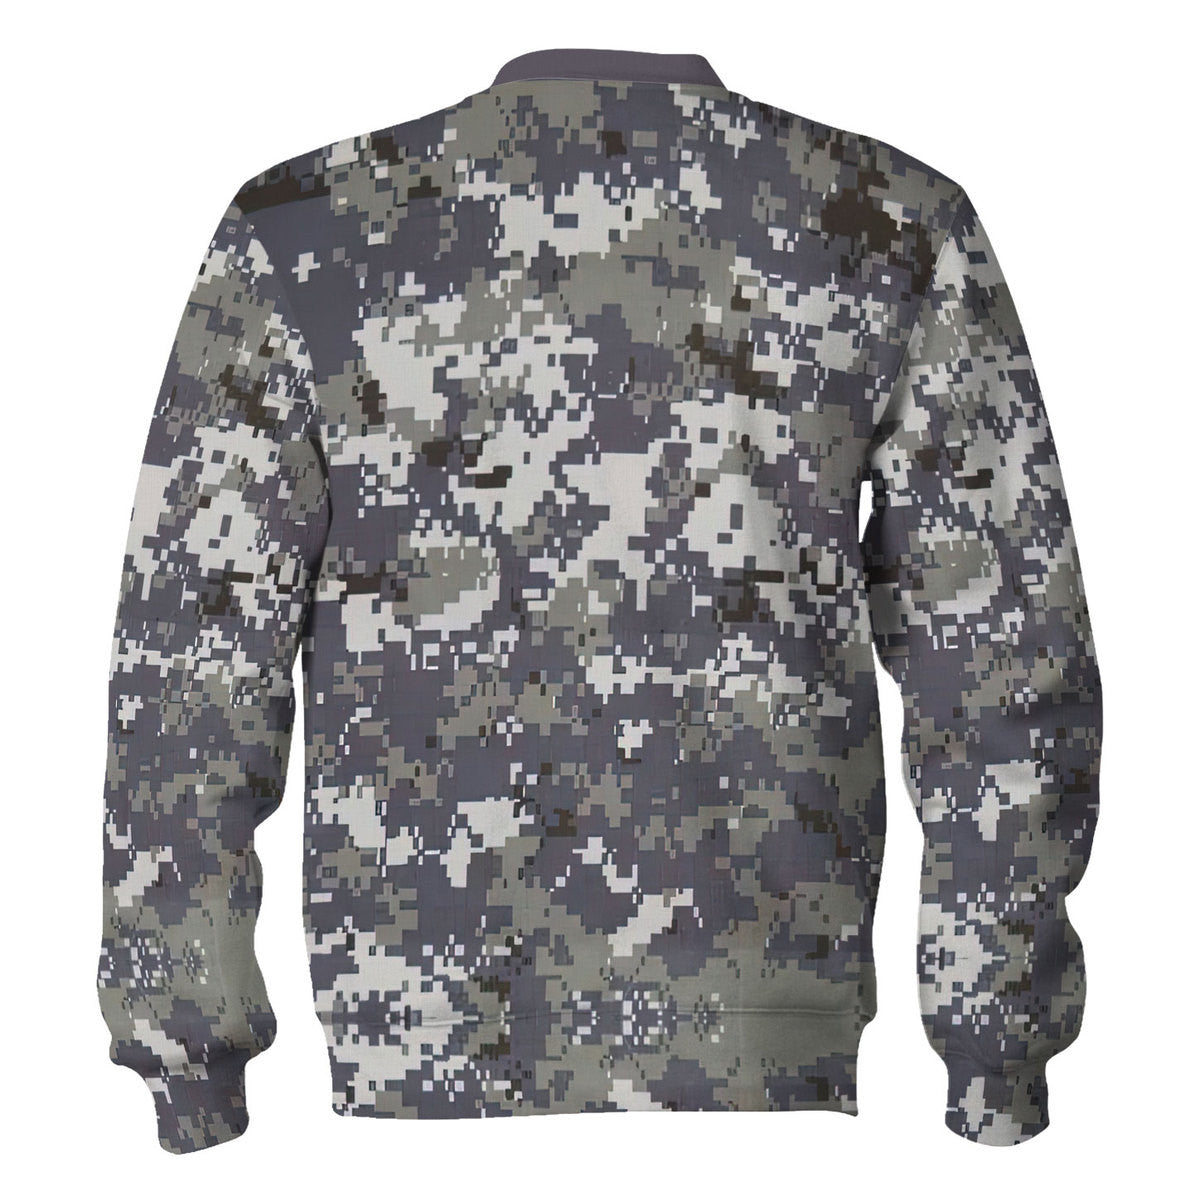 American Navy Working Uniform (NWU) Type I Camo Sweatshirt